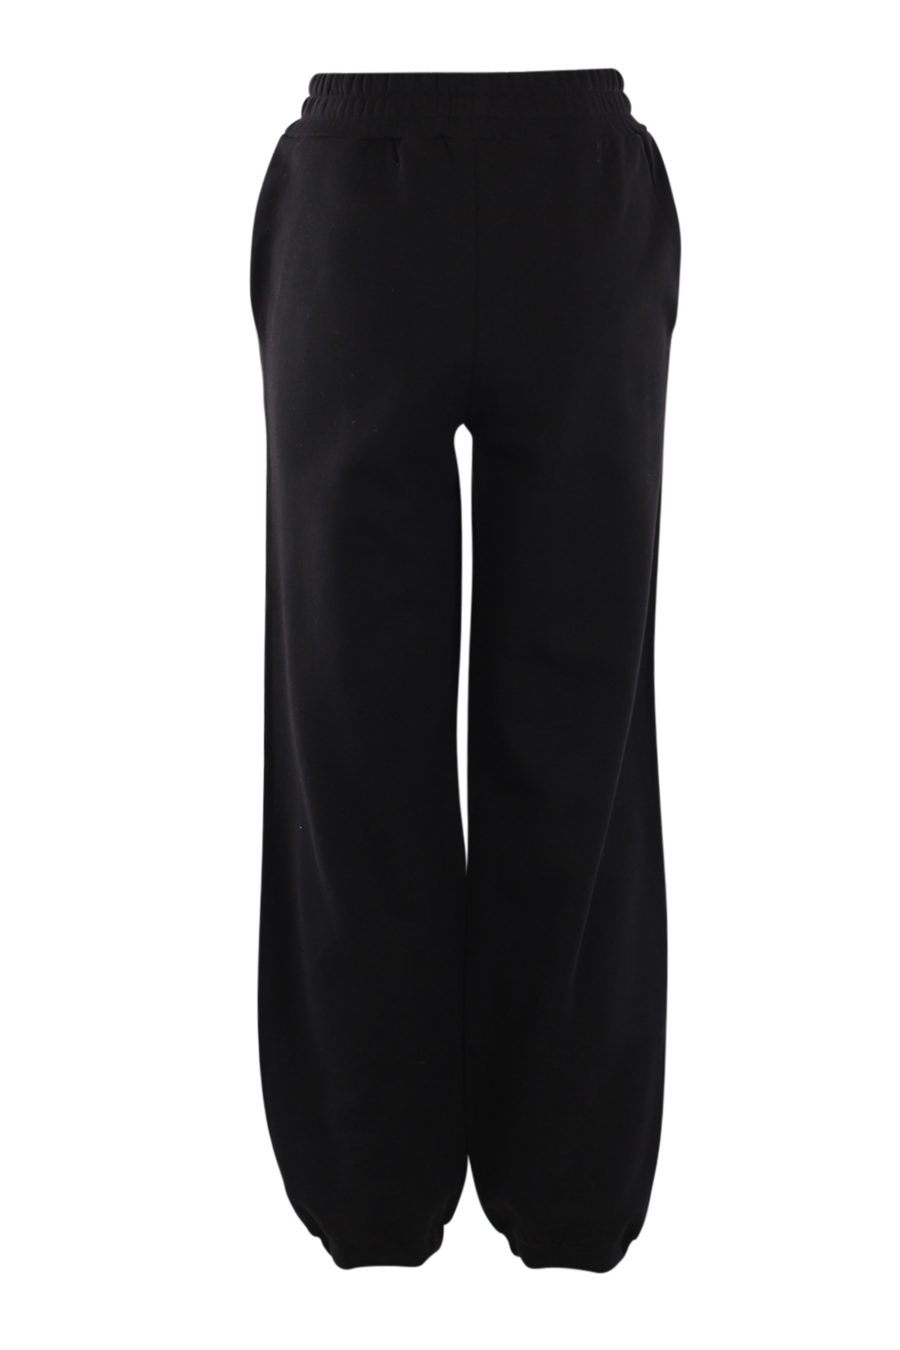 Pantalón chándal negro con logo grande lateral - IMG 0544